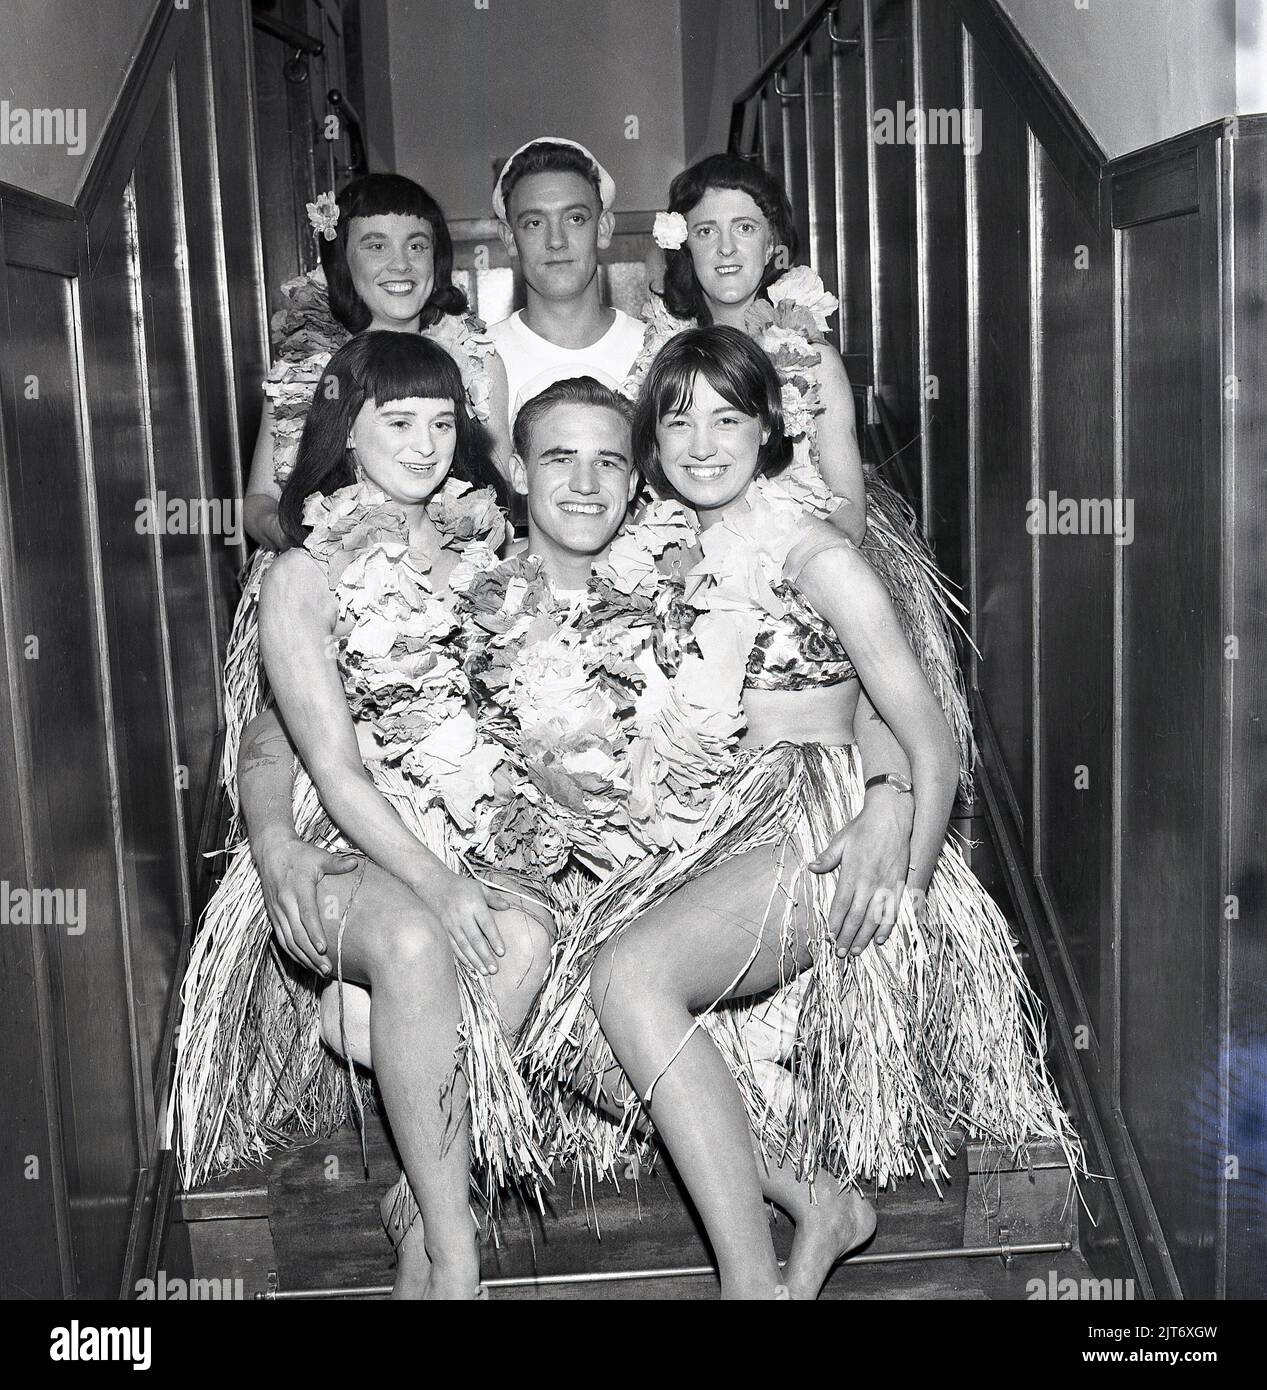 1965, historique, production théâtrale du Pacifique Sud, coulisses sur un escalier, les artistes se réunissent pour une photo de groupe, deux heureux 'ailors' avec des filles en jupes de gazon, Fife, Écosse, Royaume-Uni. South Pacific est une comédie musicale écrite par le partenariat à succès de Rodgers et Hammerstein, basée sur le livre Tales of the South Pacific et qui a été créée sur Broadway en 1949. Banque D'Images